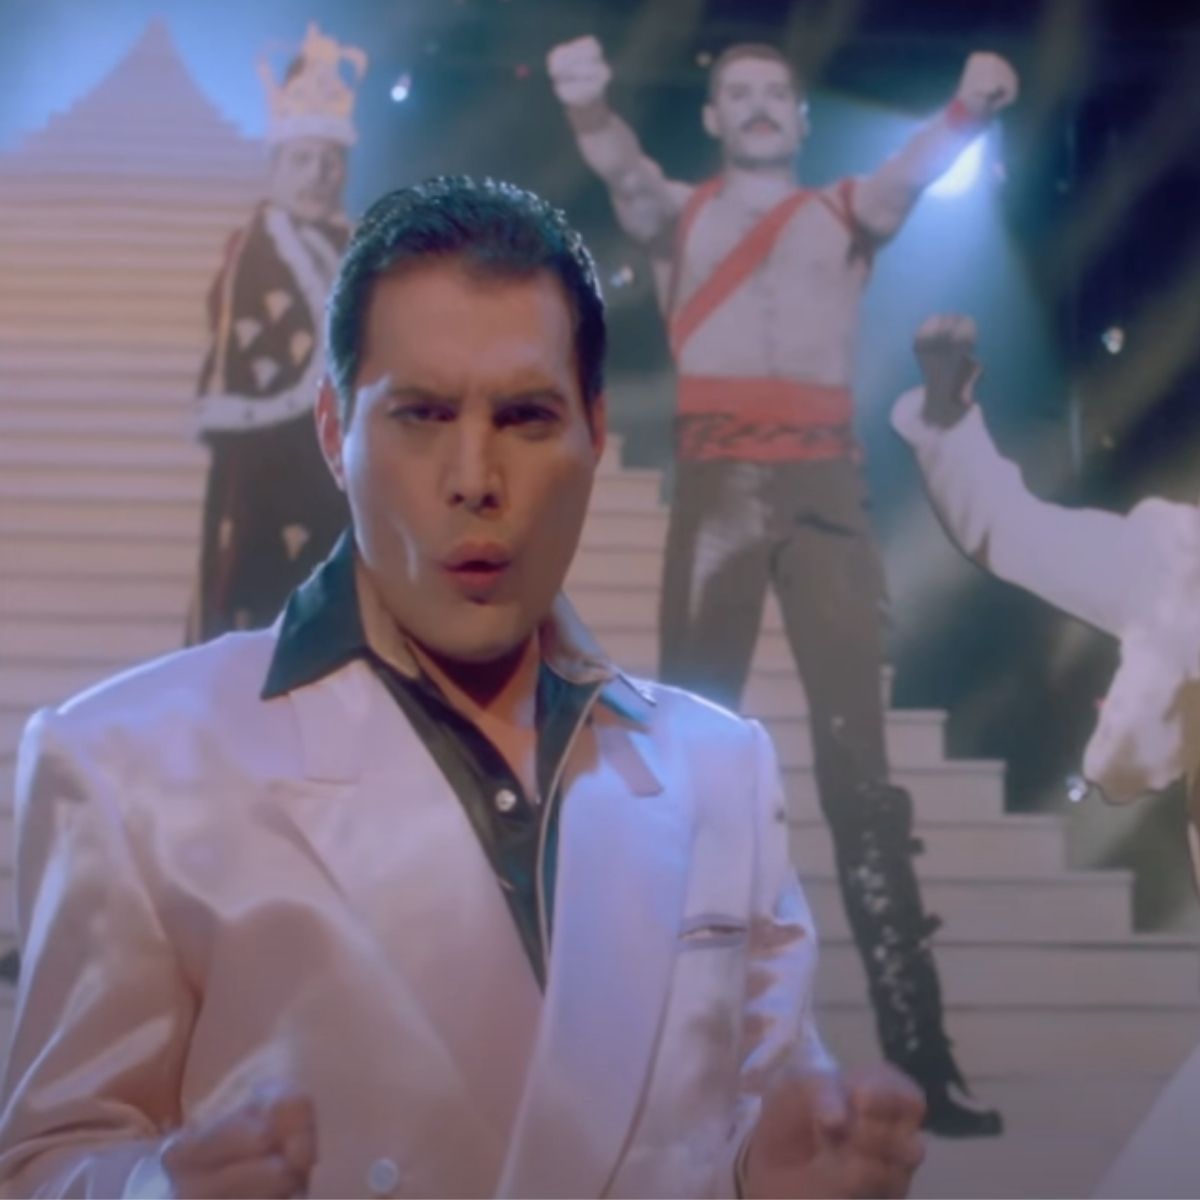 Freddie e suas cópias de papelão no vídeo 'The Great Pretender' (O Grande Pretender)